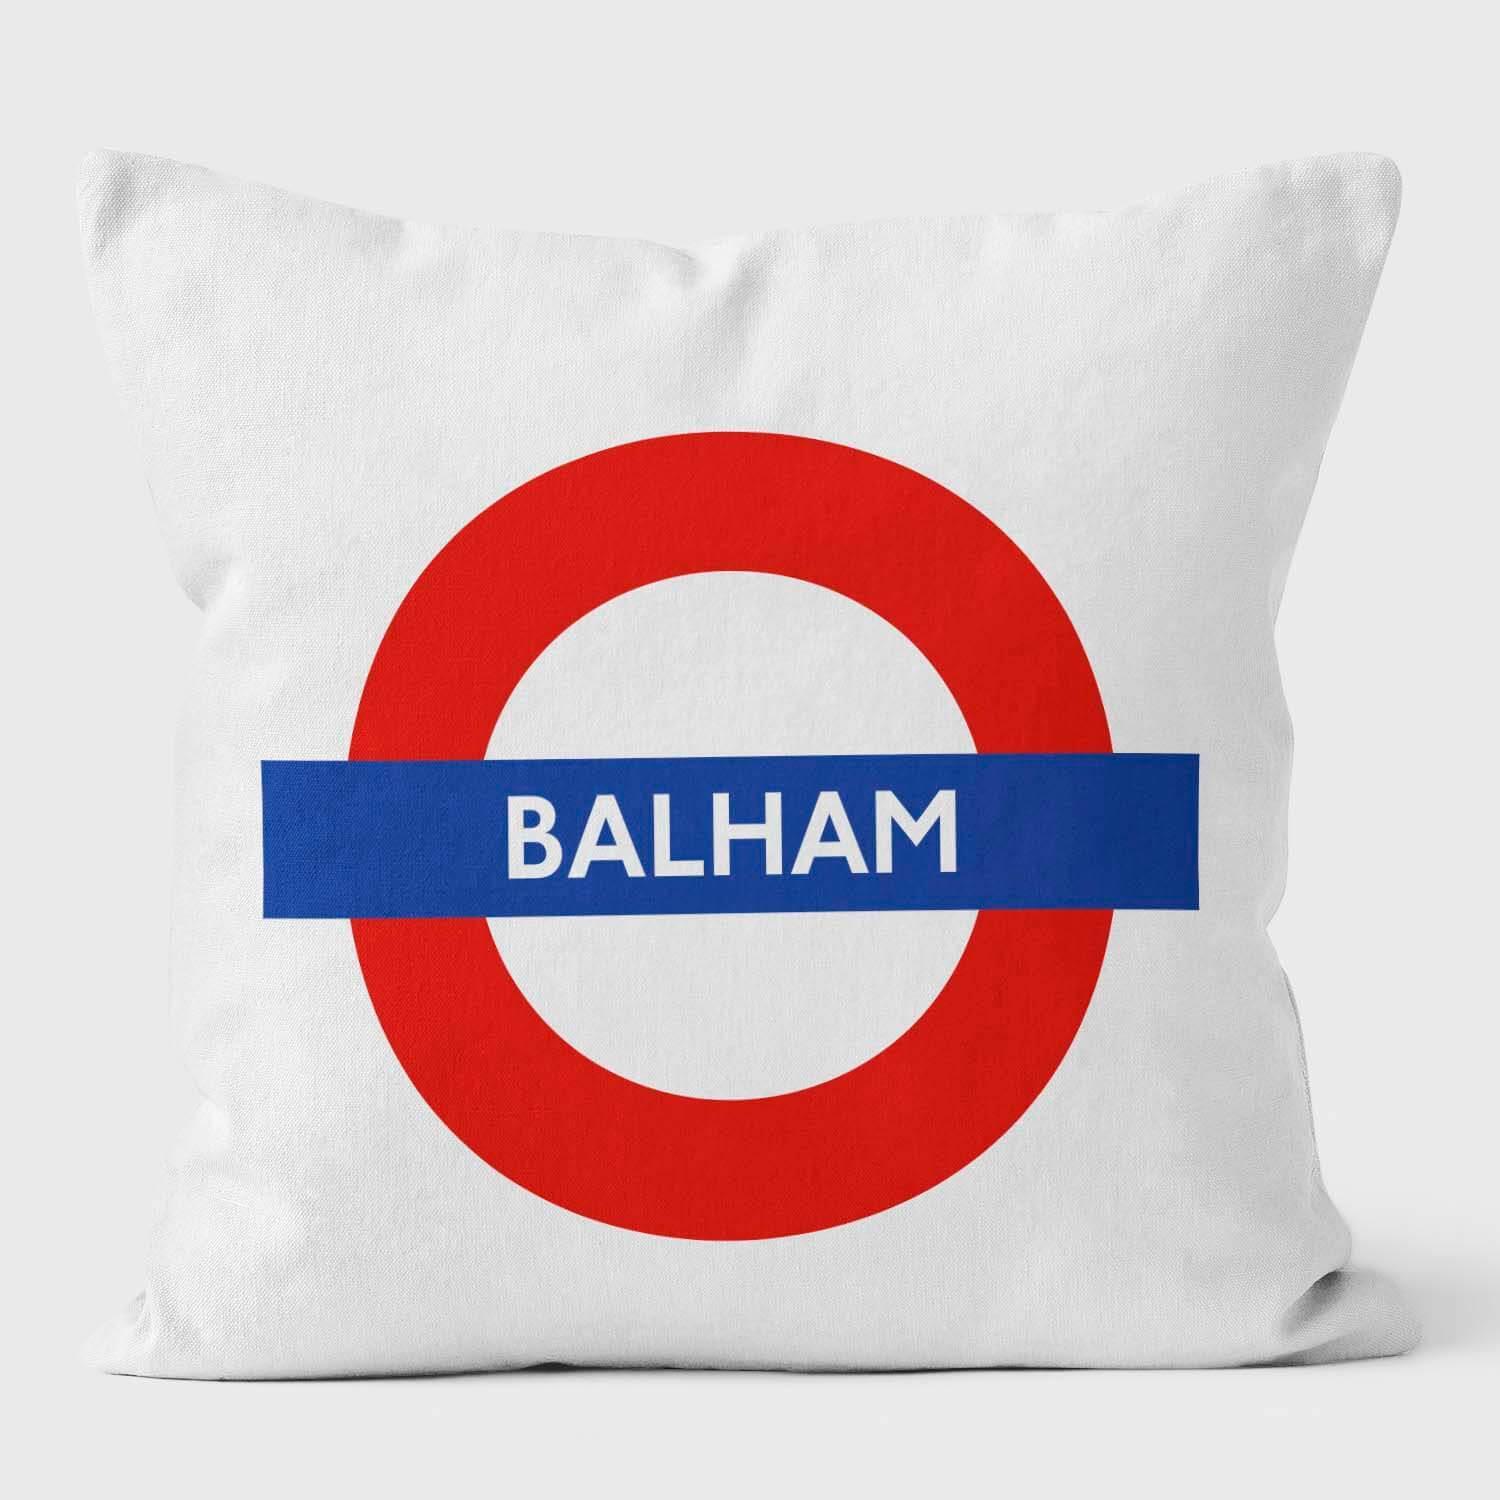 Balham London Underground Tube Station Roundel Cushion - Handmade Cushions UK - WeLoveCushions